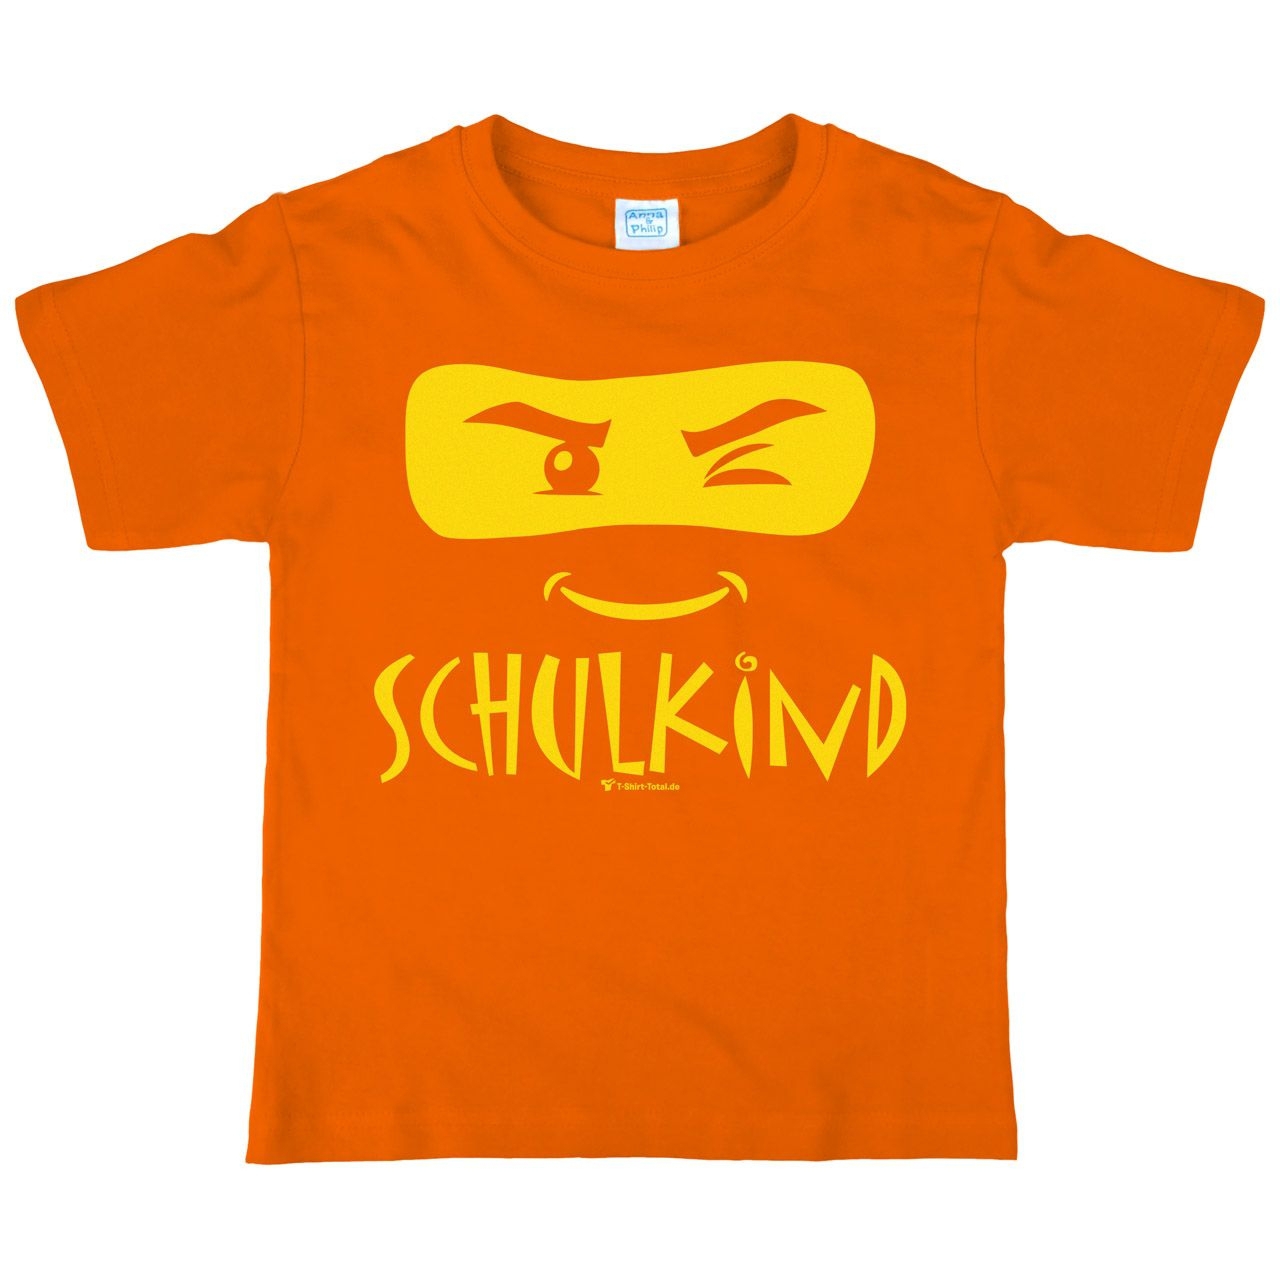 Schulkind Maske Kinder T-Shirt mit Name orange 122 / 128